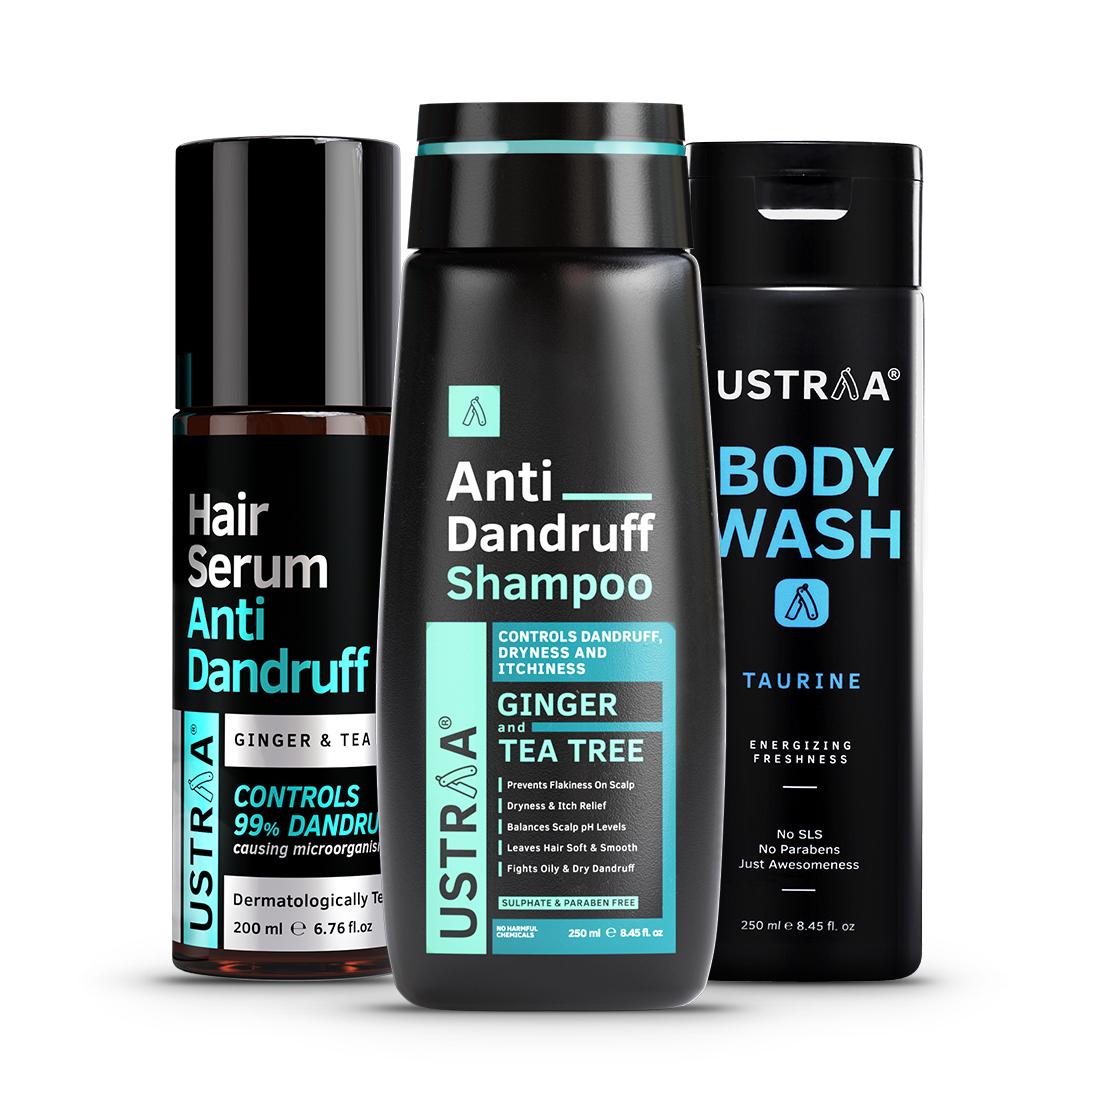 Anti Dandruff Hair Serum 200ml, Anti Dandruff Shampoo 250ml & Body Wash  Taurine 250ml